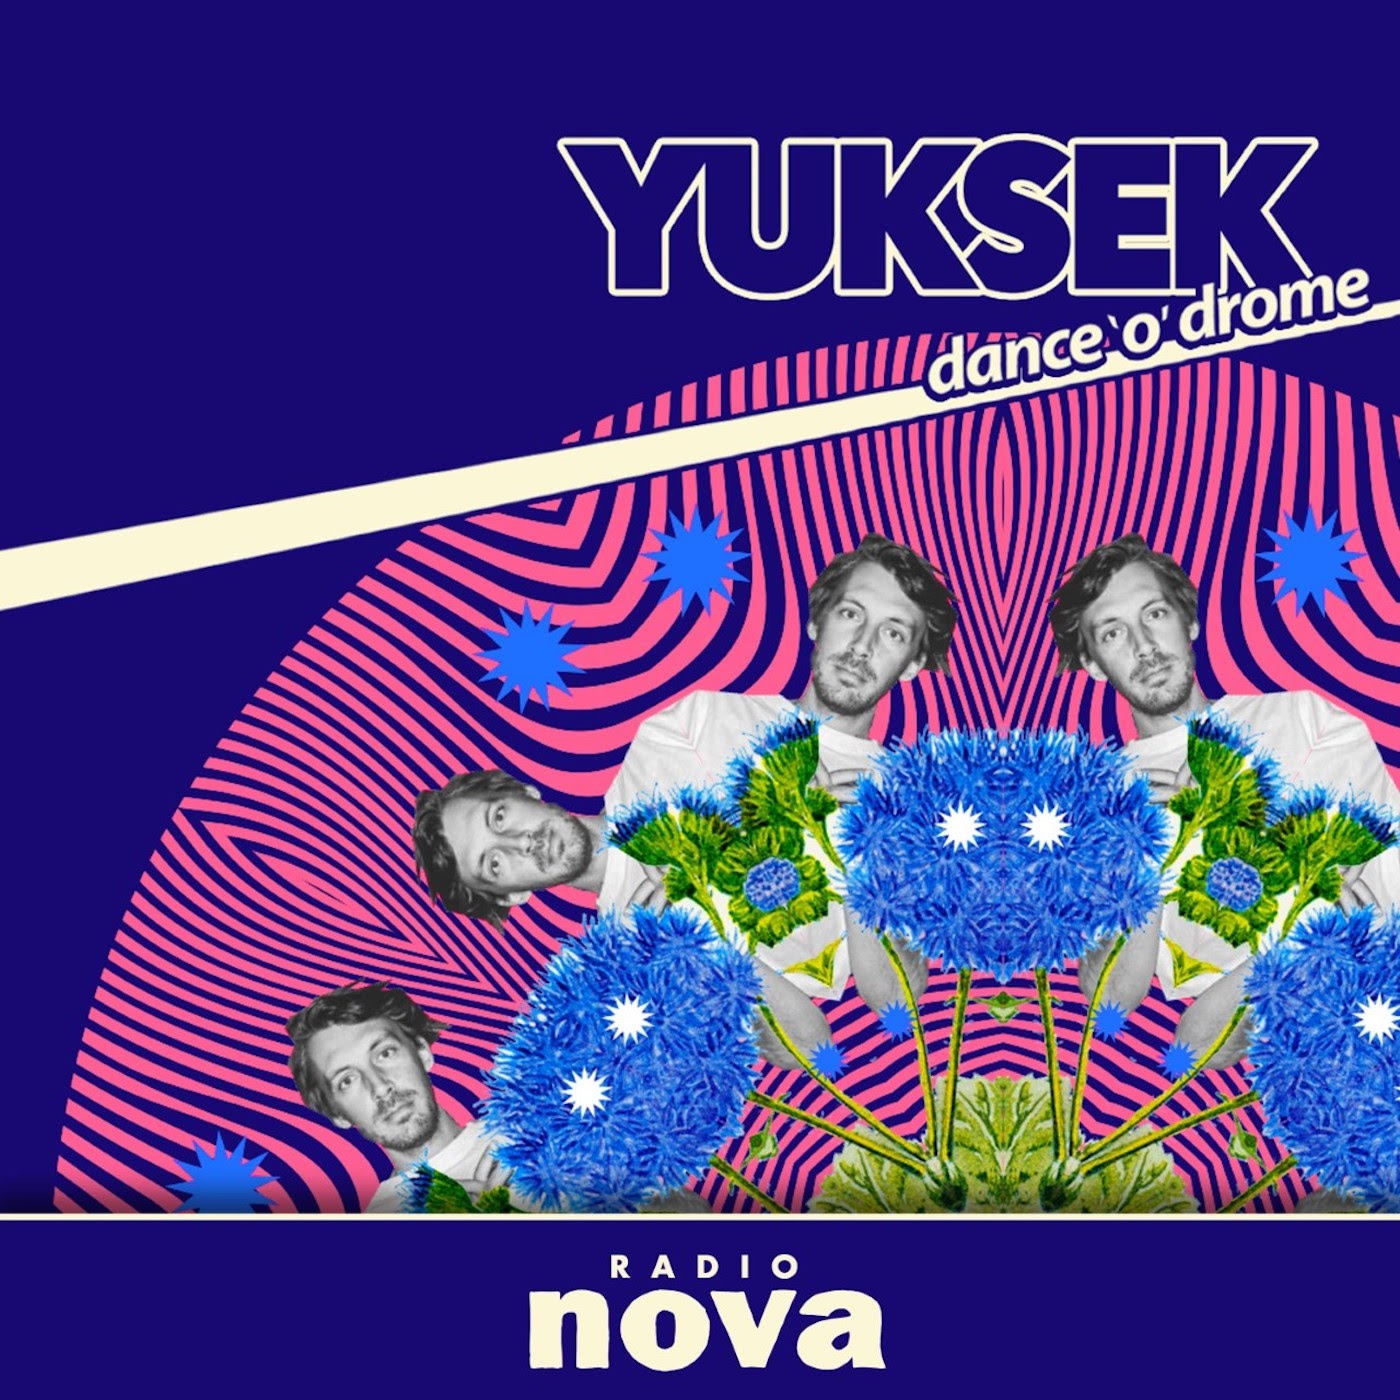 « Dance’o’drome » #19 : le mix de Yuksek, avec Joakim, sur Radio Nova